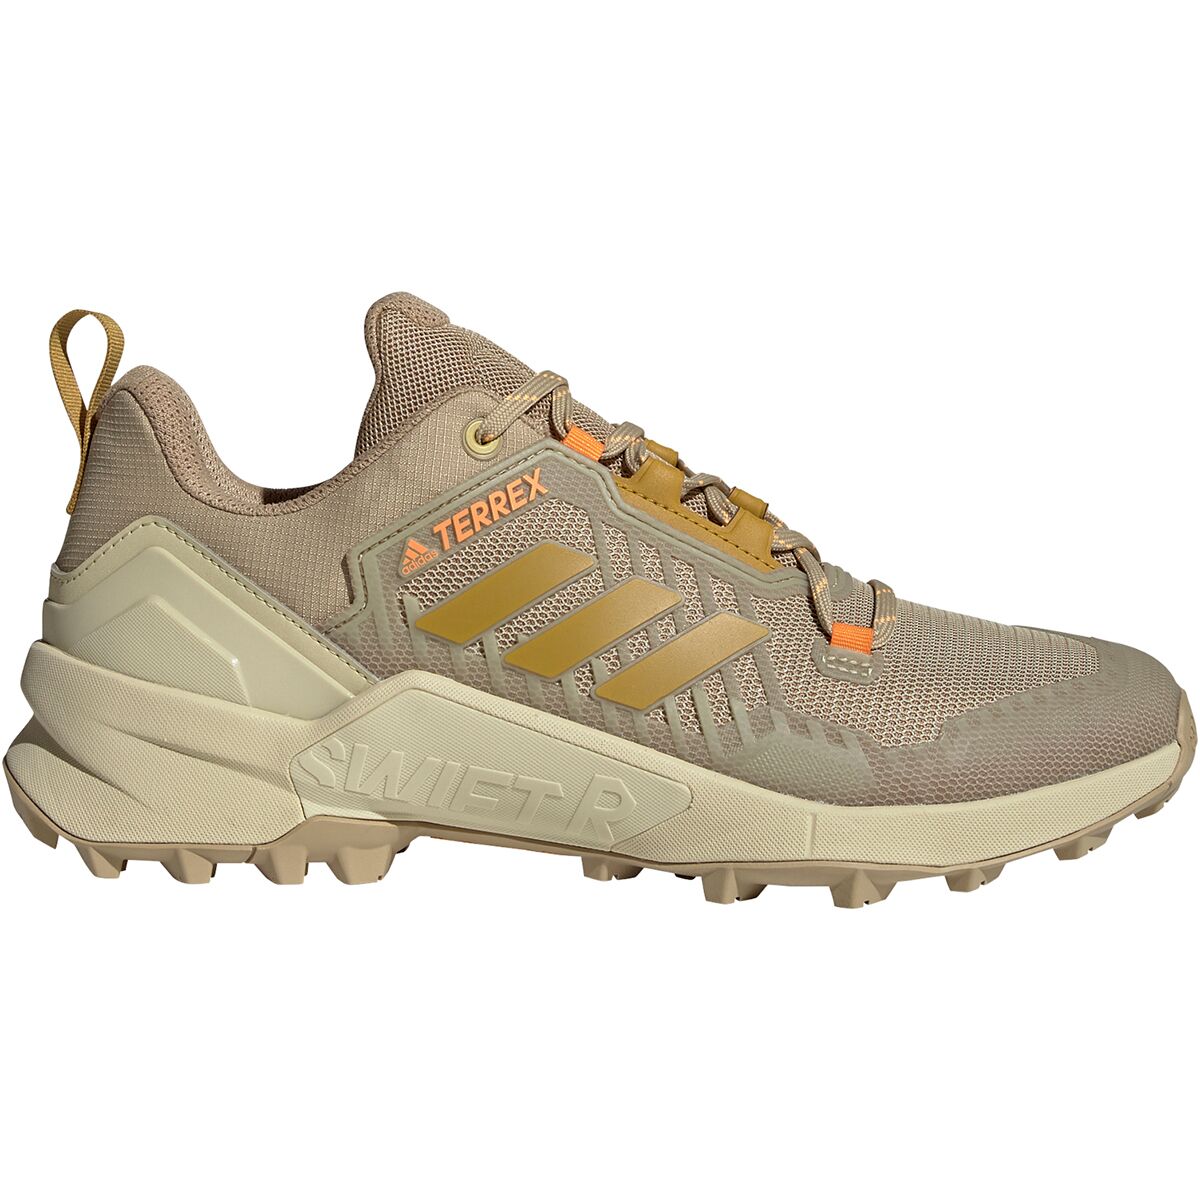 Adidas Outdoor Terrex Swift R3 Hiking Shoe - Men's